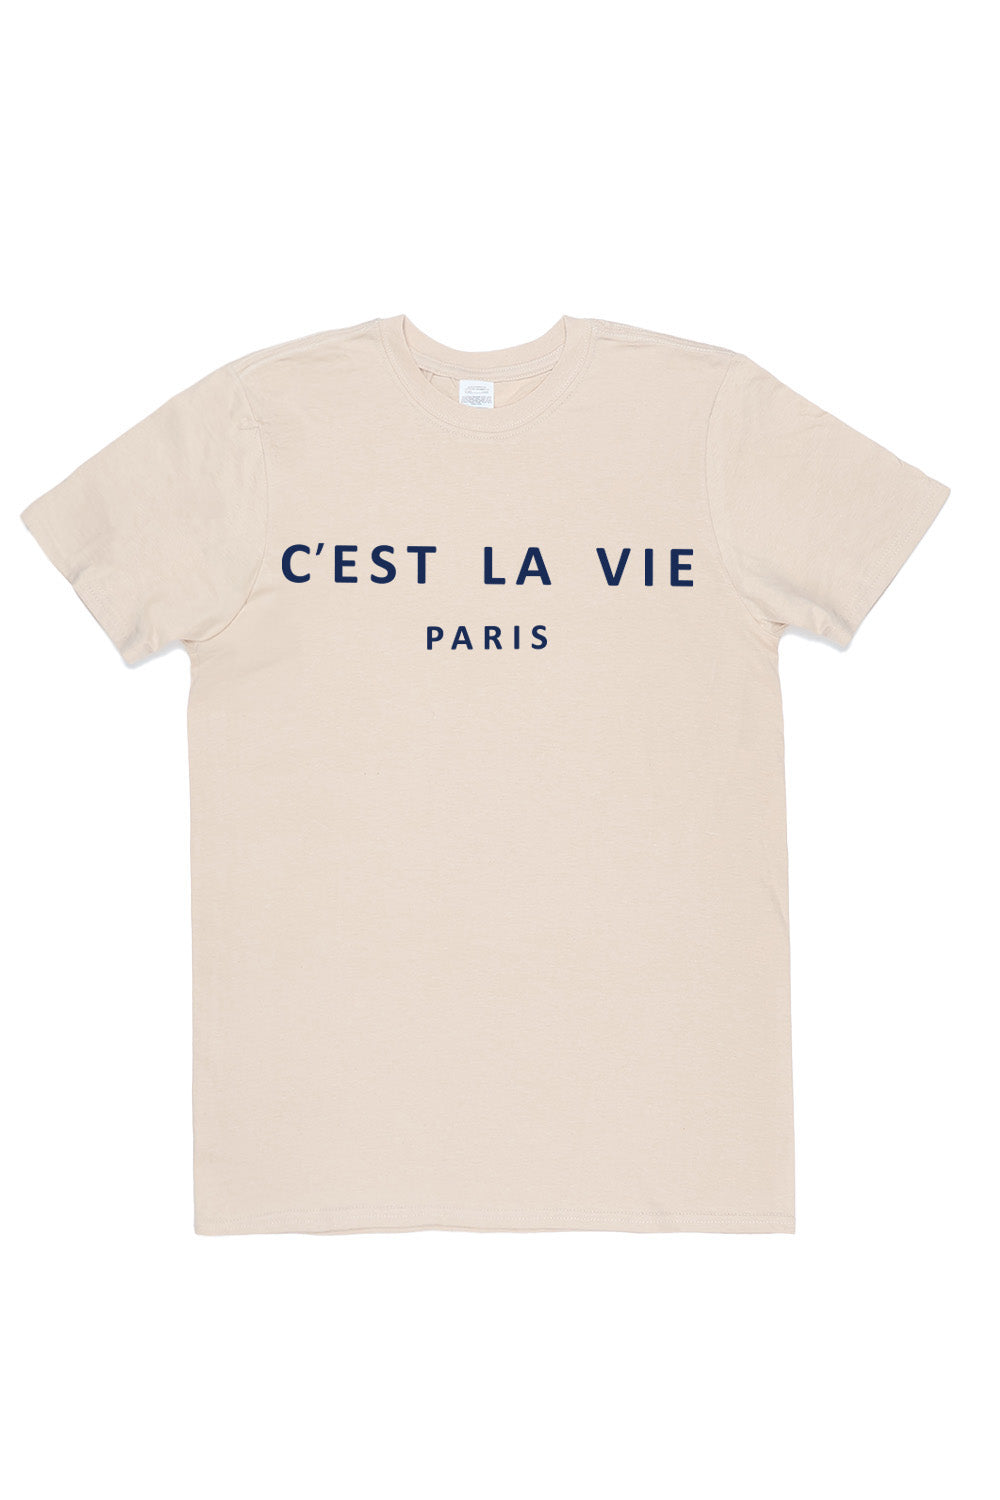 C'est La Vie Paris Slogan T-Shirt In Sand (Custom Pack)